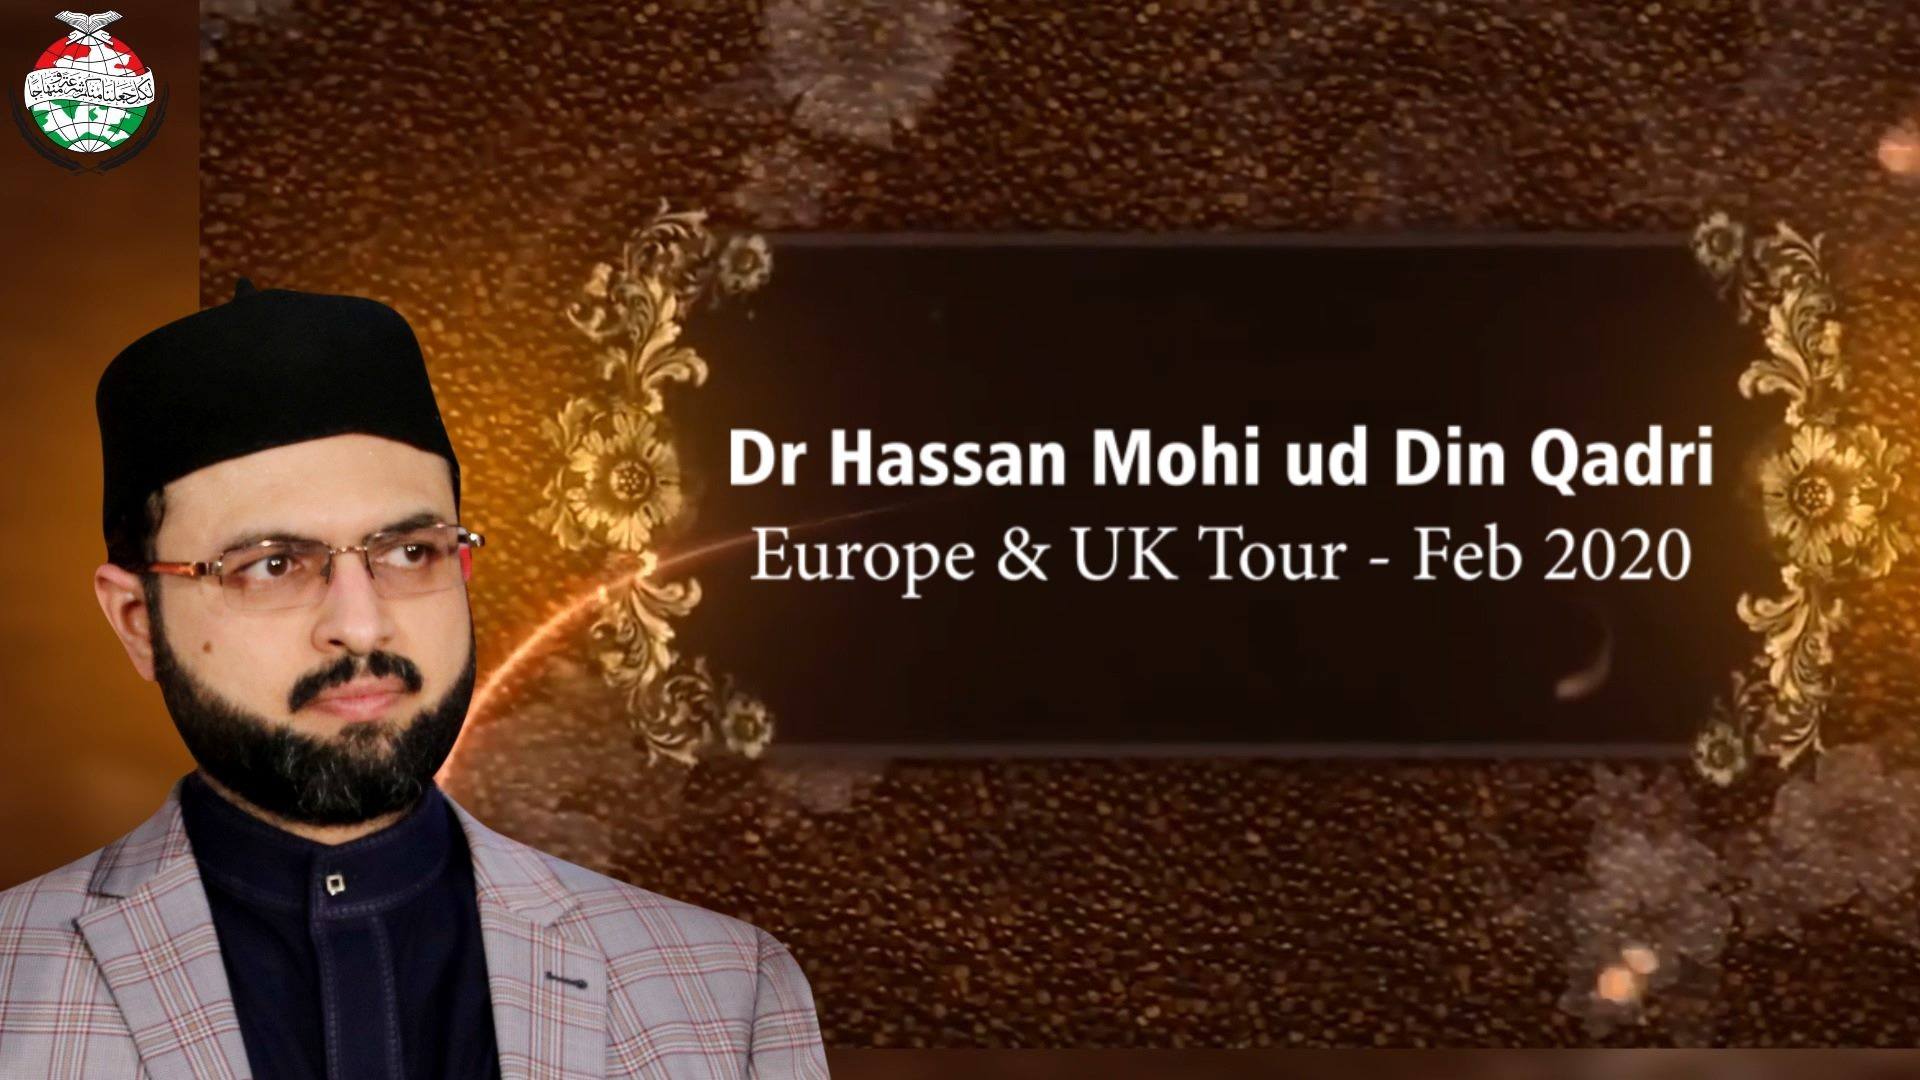 ڈاکٹر حسن محی الدین قادری کے دورہ یورپ اور یوکے کی جھلکیاں